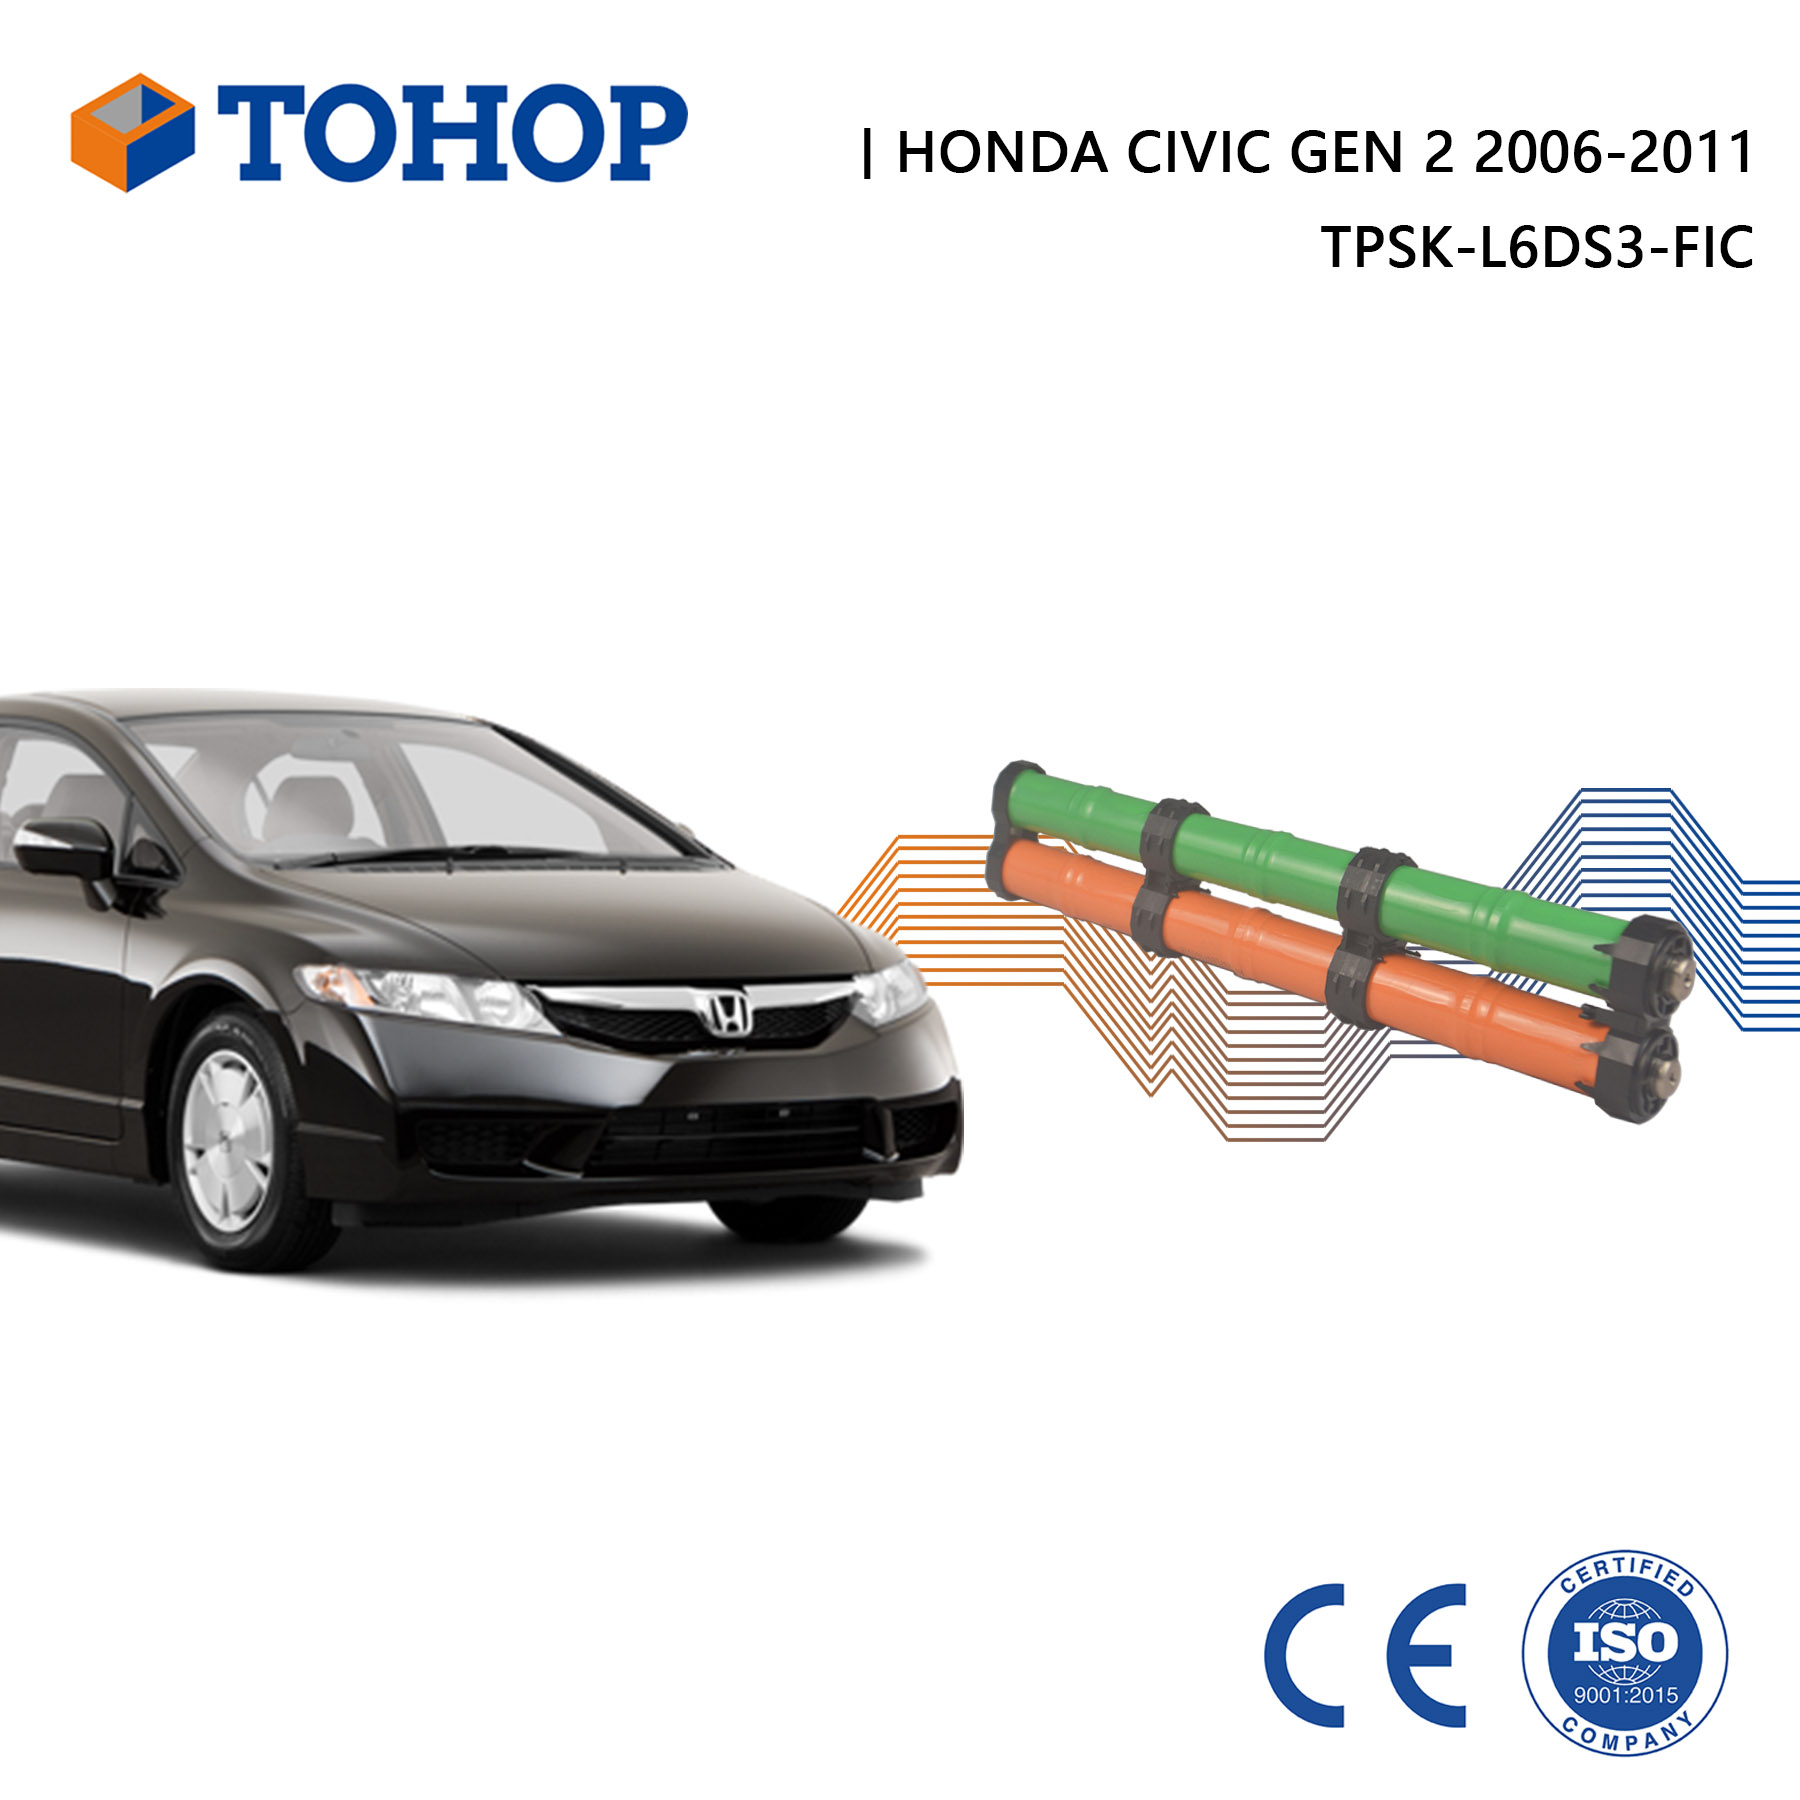 Brandneue Gen.2 Honda Civic 2008 Hybrid-Autobatterie für HEV